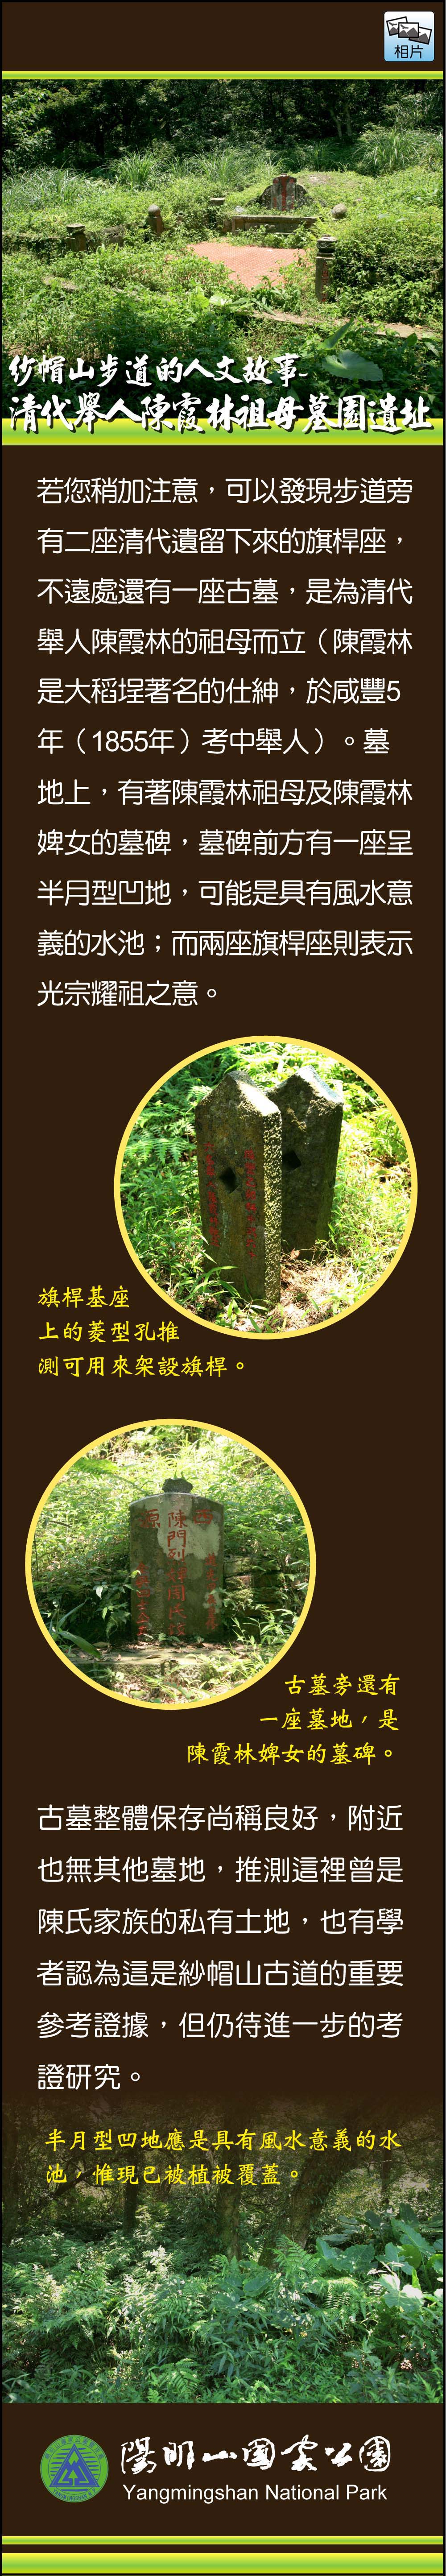 紗帽山步道的人文故事-清代舉人陳霞林祖母墓園遺址